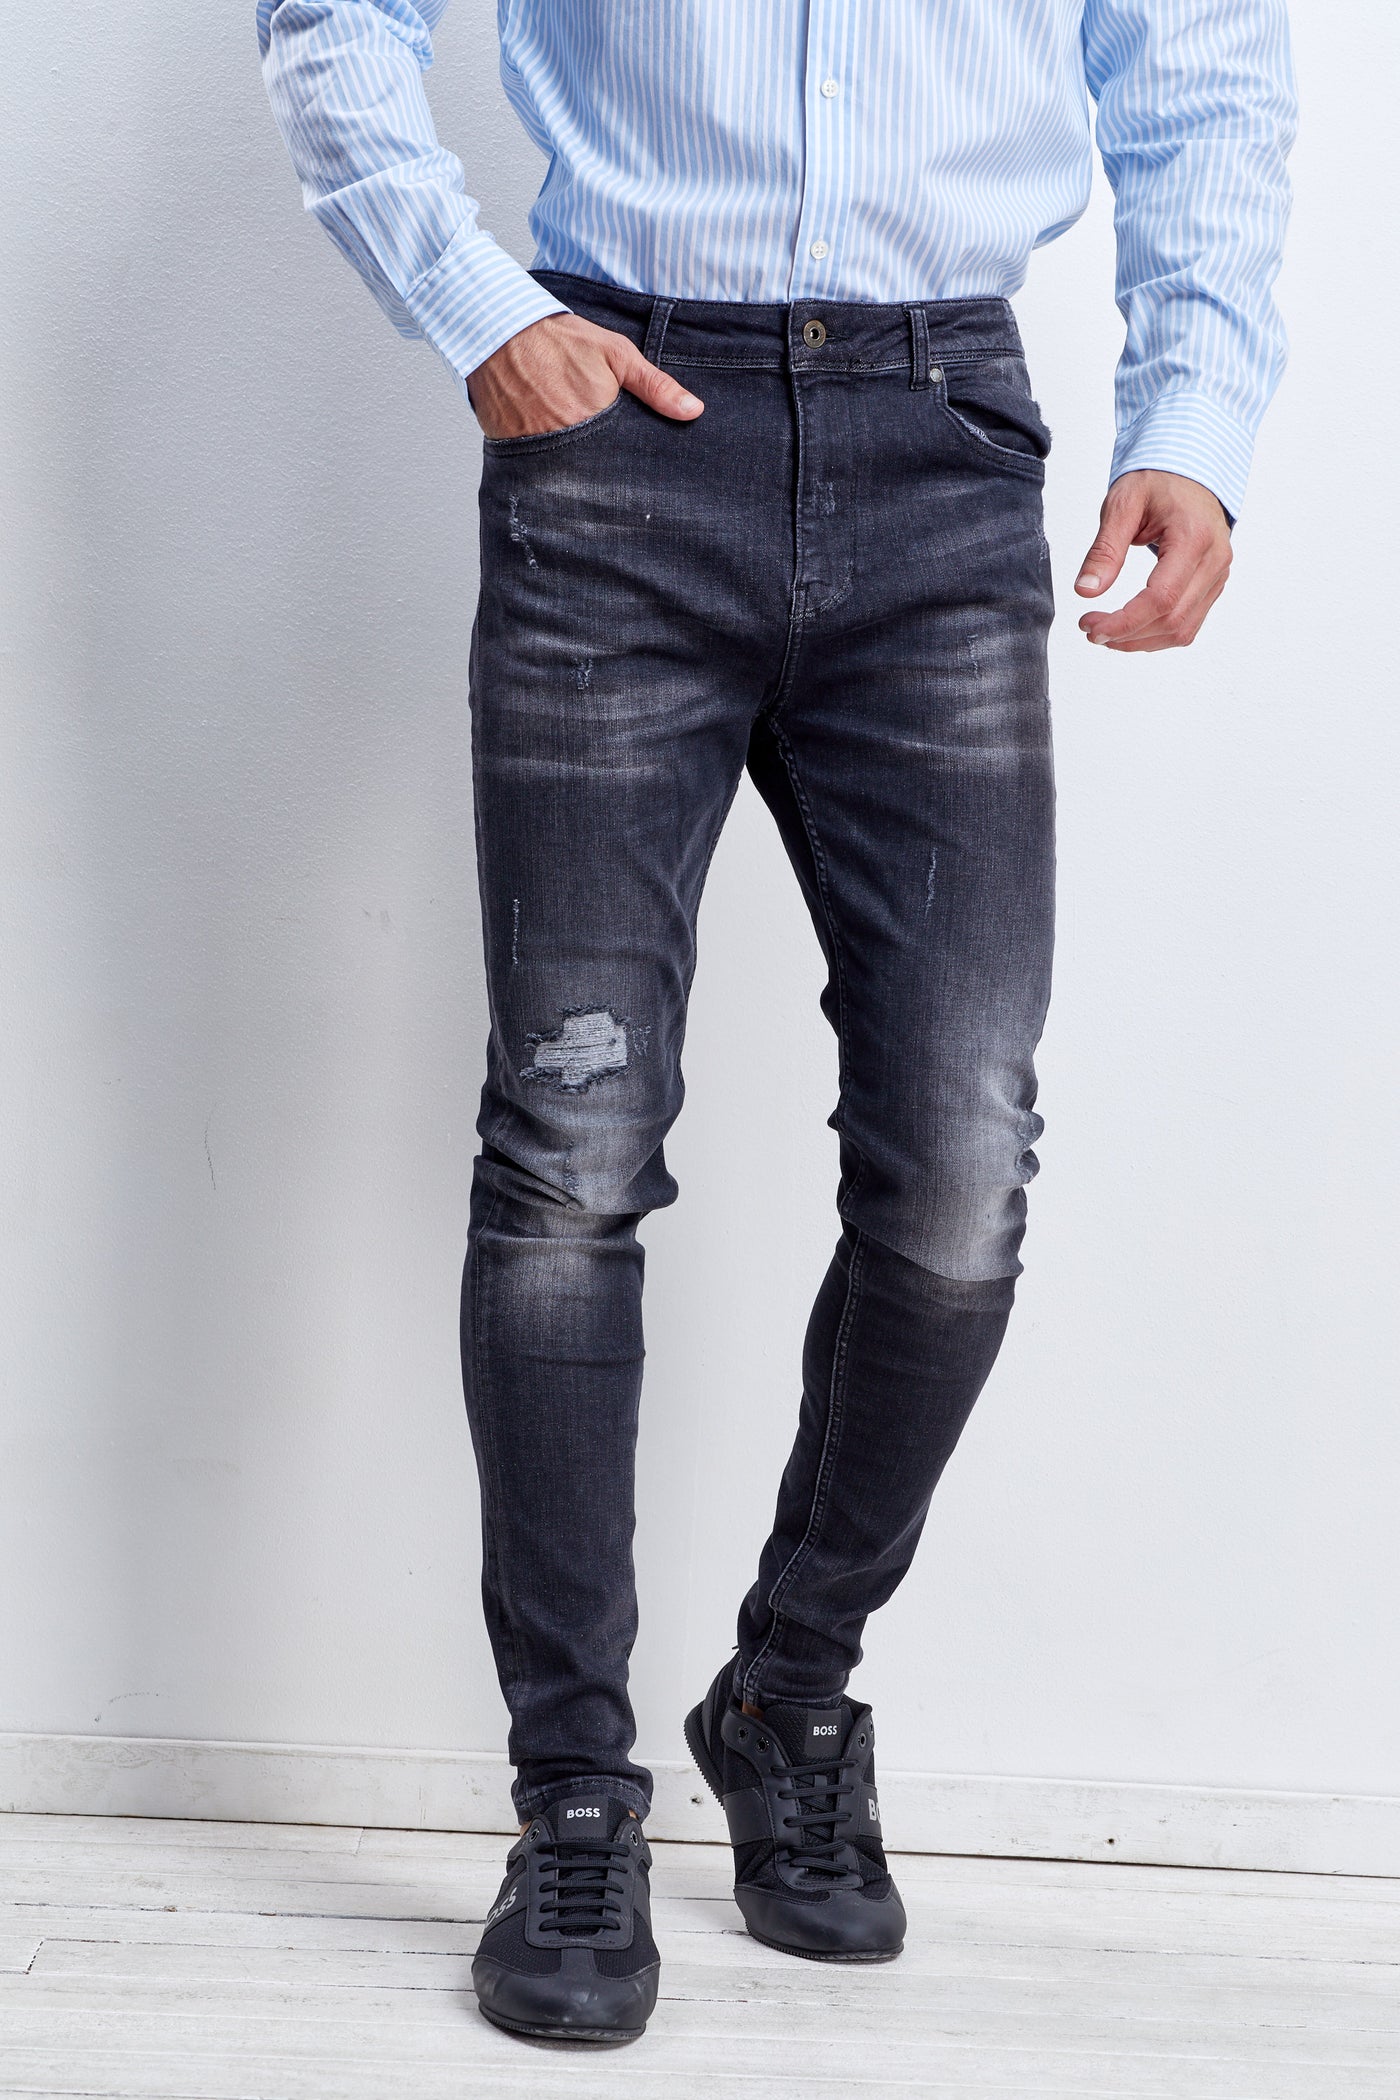 מכנס ג'ינס סקיני בצבע שחור משופשף